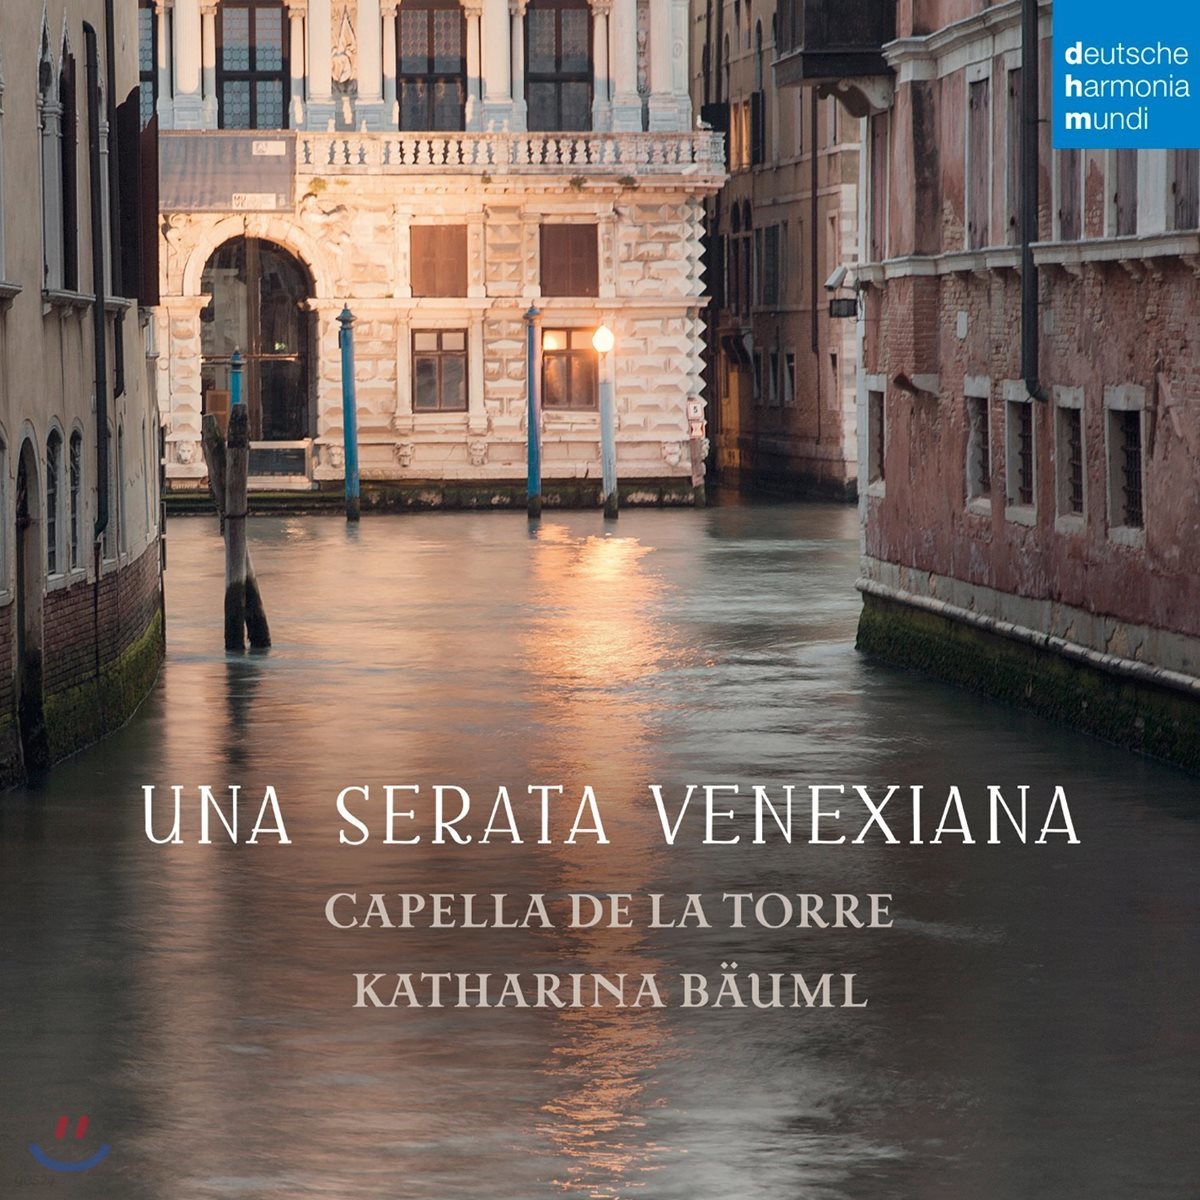 Capella de la Torre 16세기 초 바로크 베네치아 악파의 숨겨진 작곡가들 (Una Serata Venexiana)